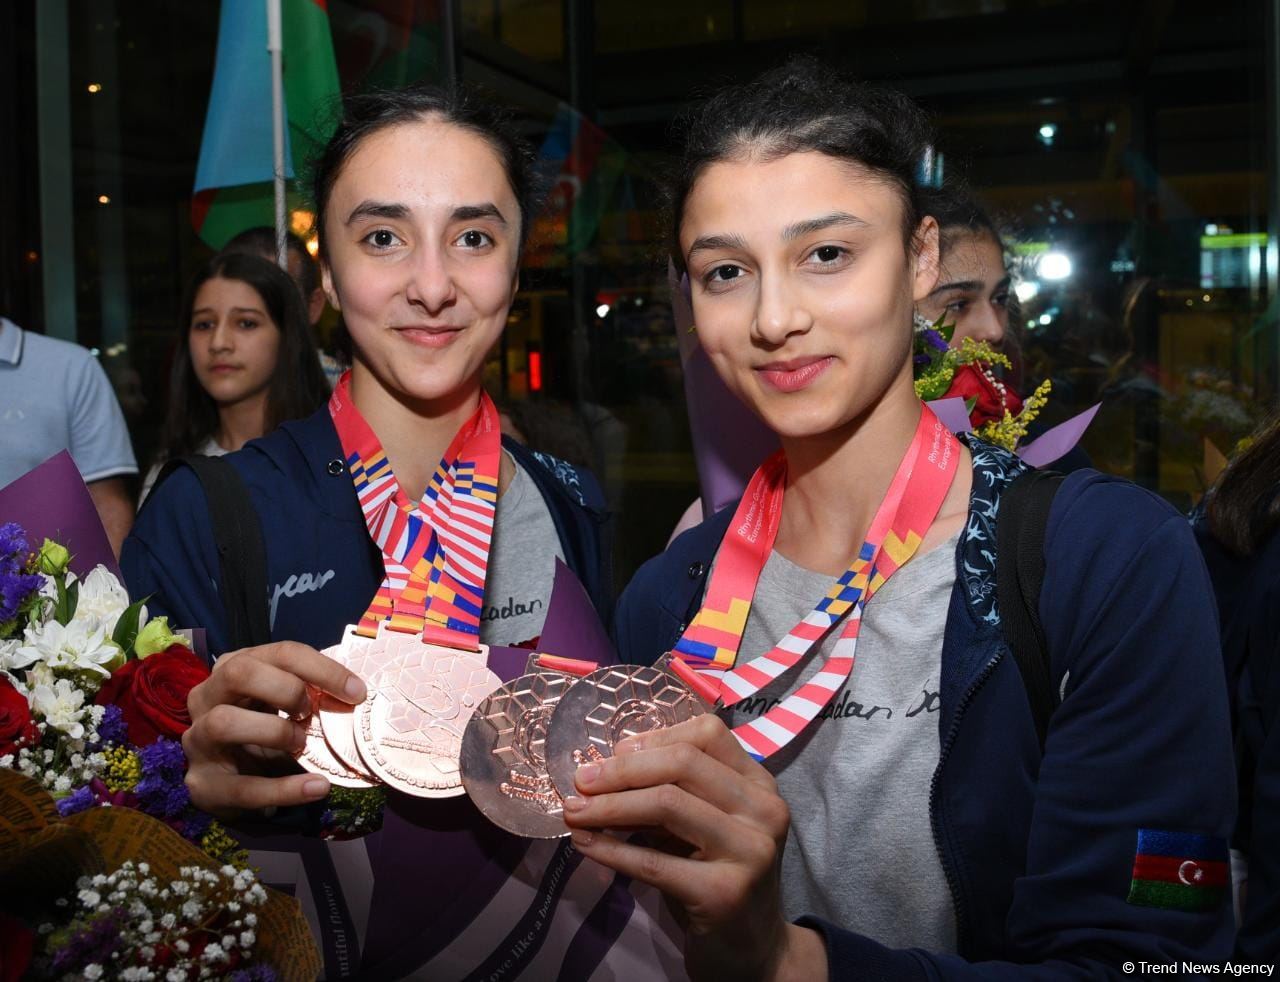 Азербайджанские гимнастки вернулись с Чемпионата Европы в Израиле с четырьмя медалями  (ФОТО)